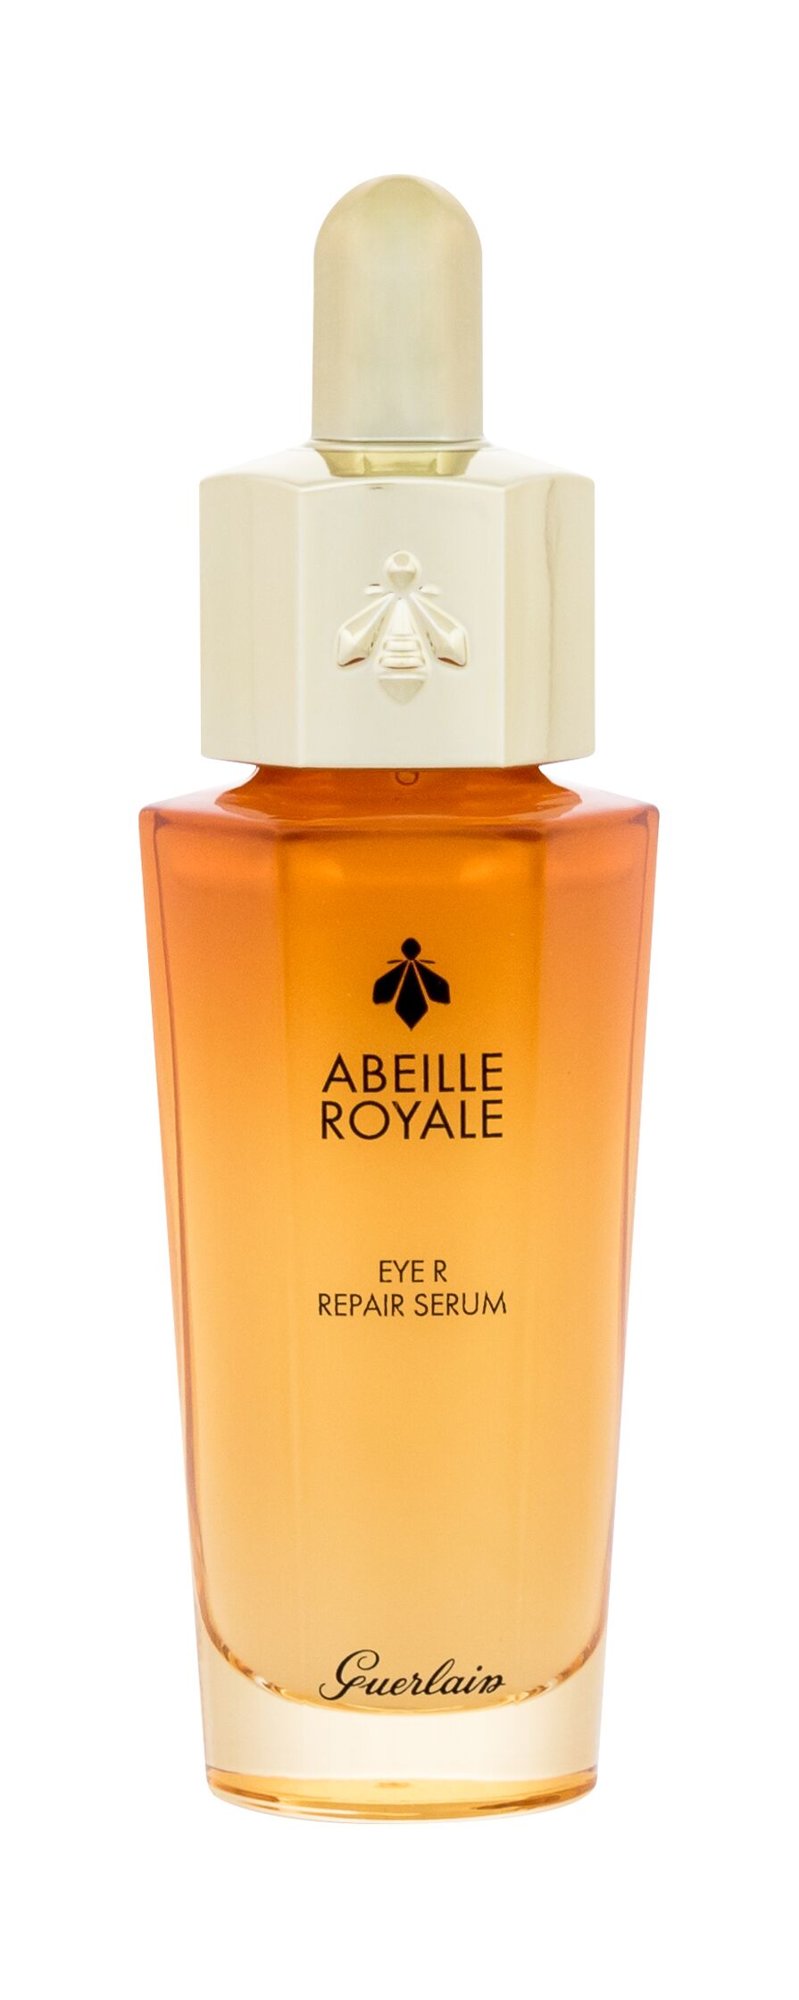 Guerlain Abeille Royale Eye R Repair Serum paakių serumas